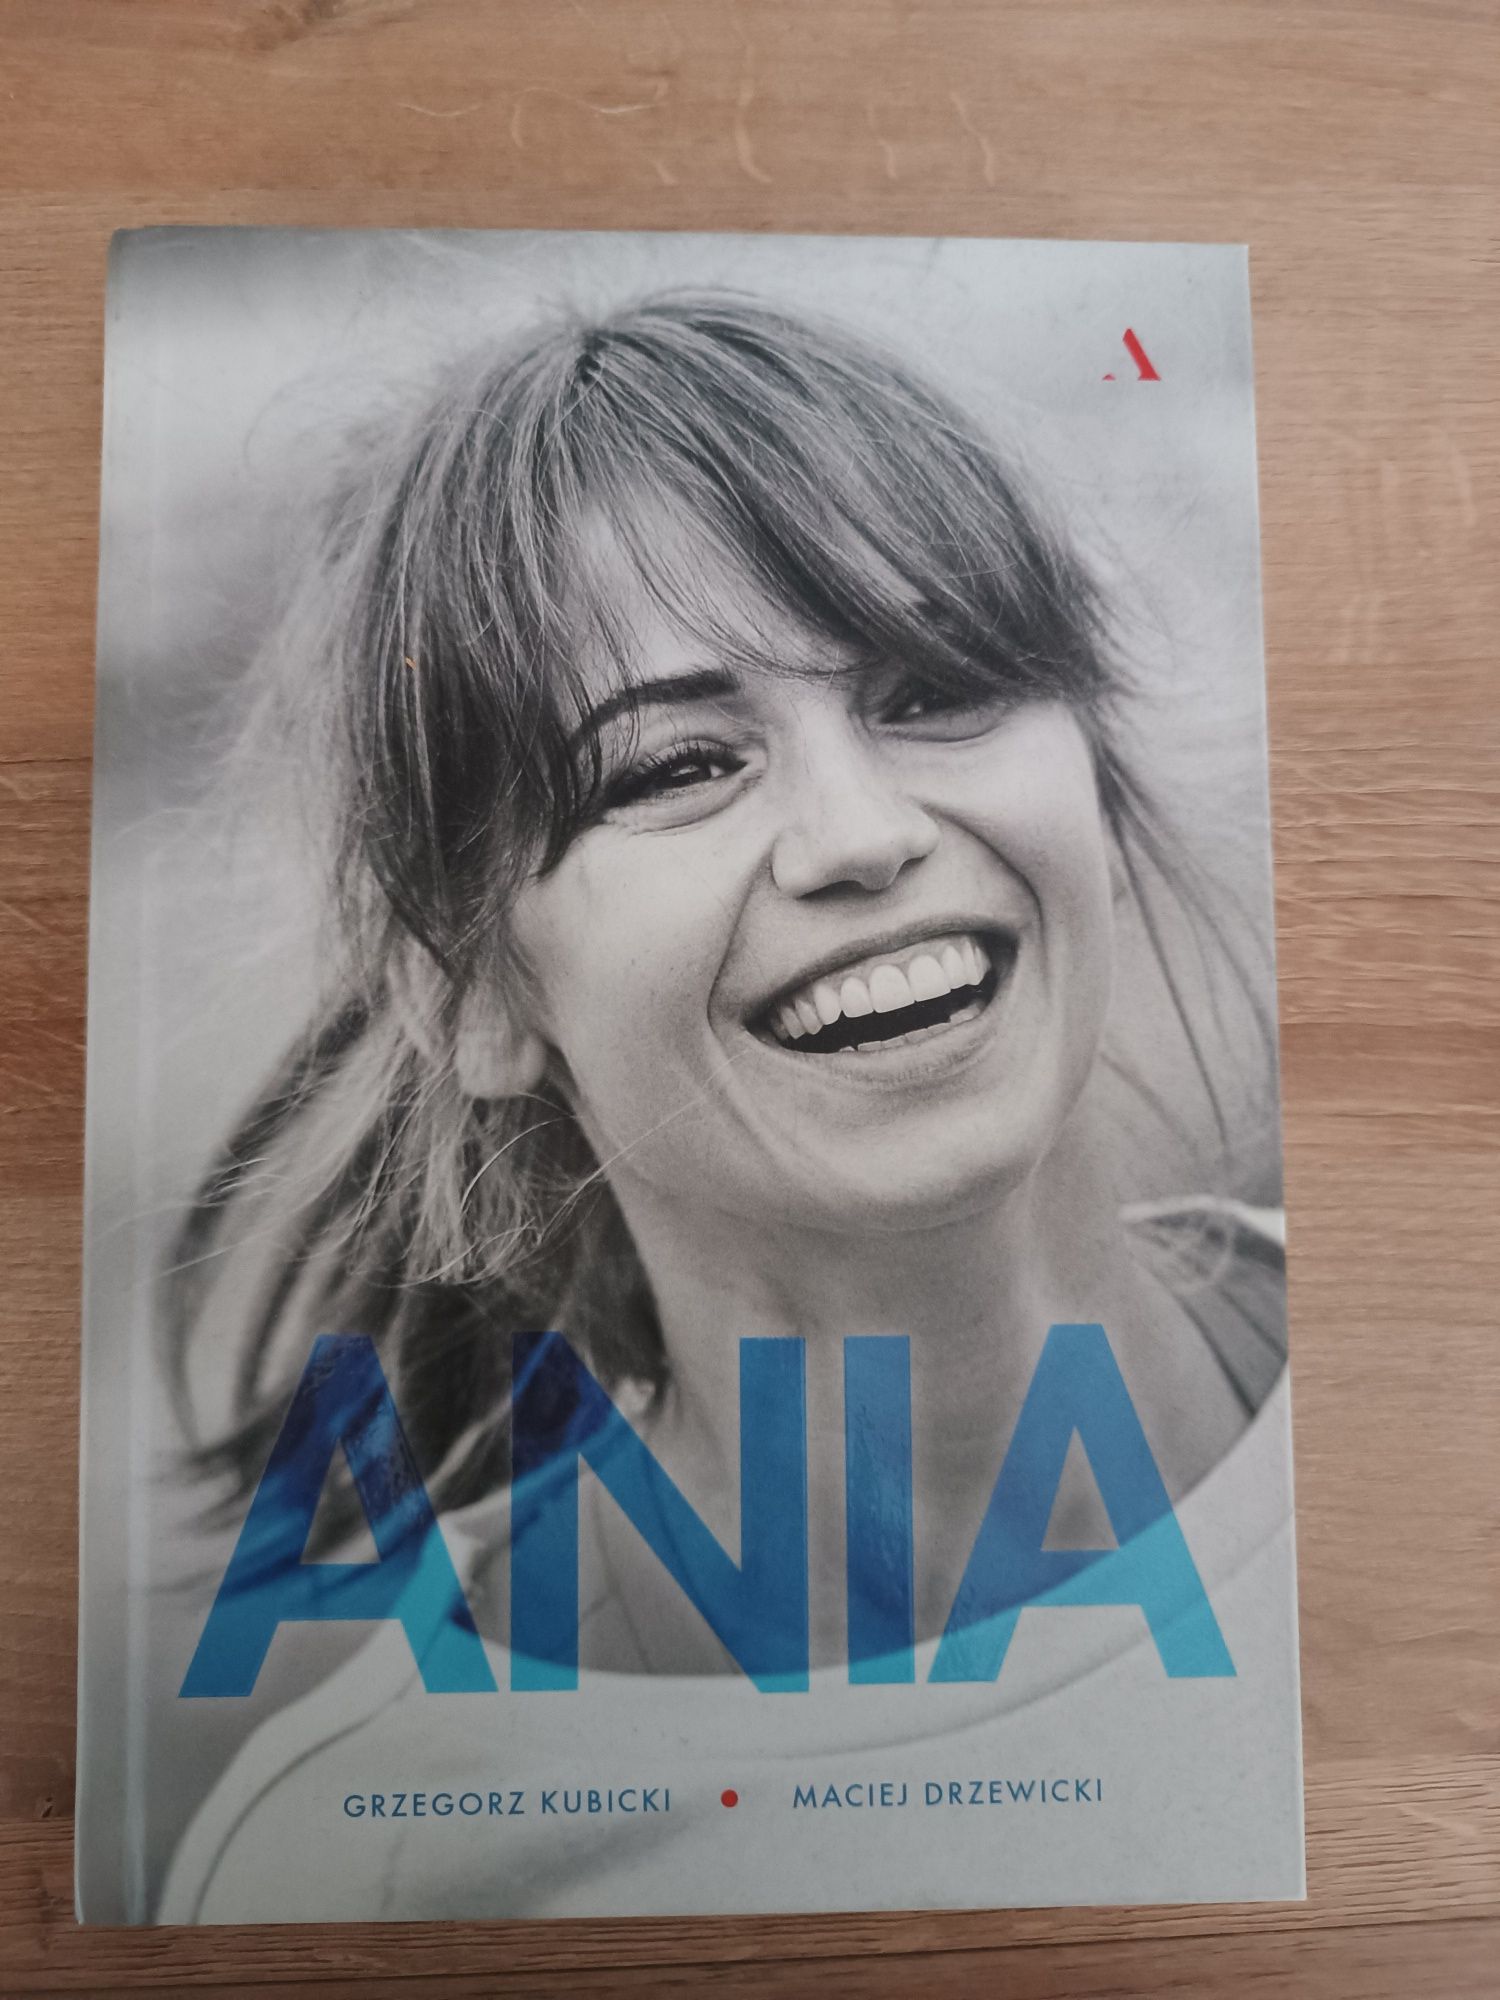 Książka Ania, stan bardzo dobry